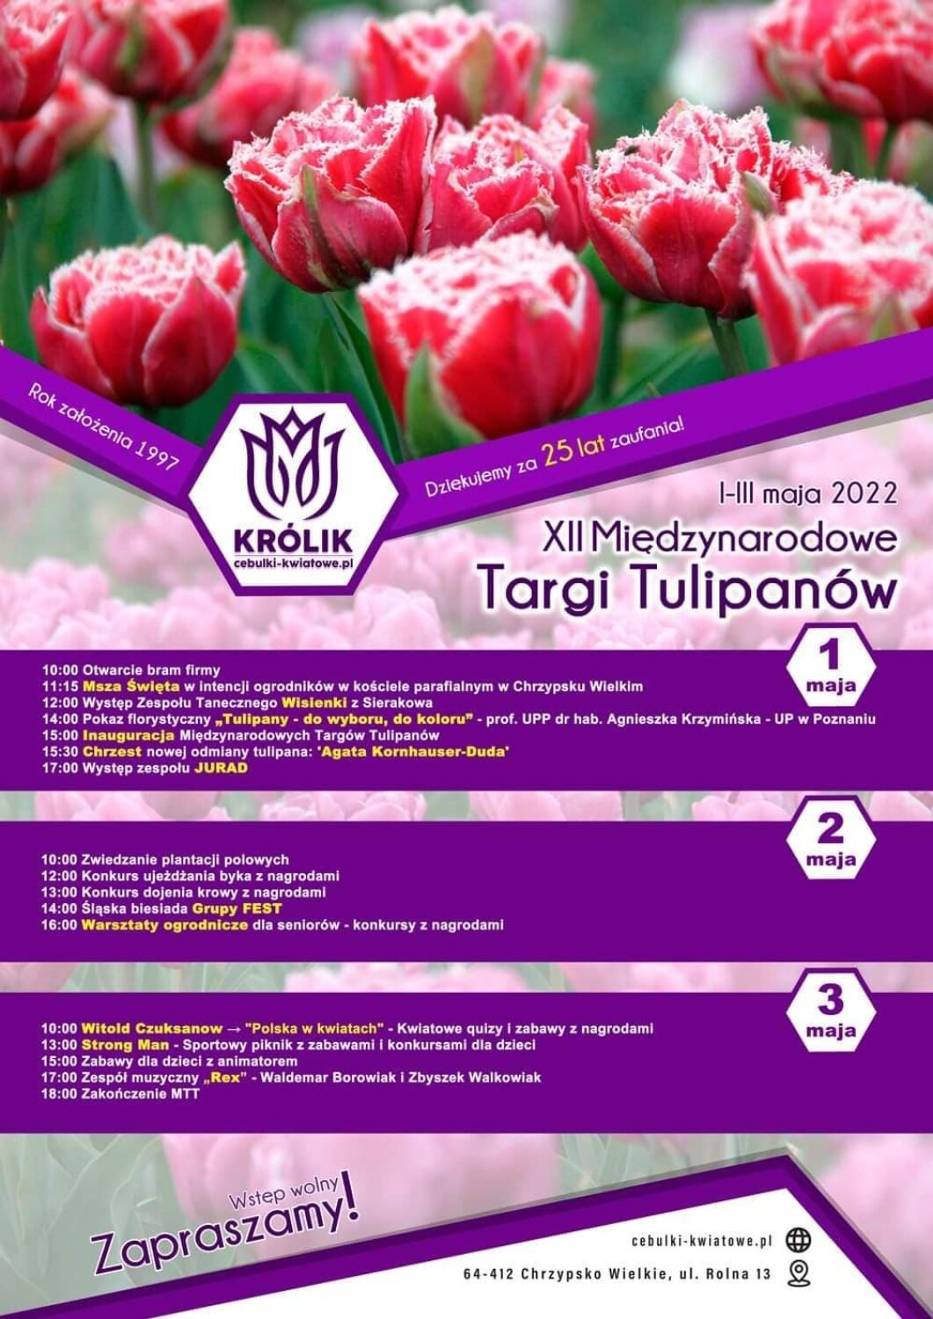 Międzynarodowe Targi Tulipanów 2022